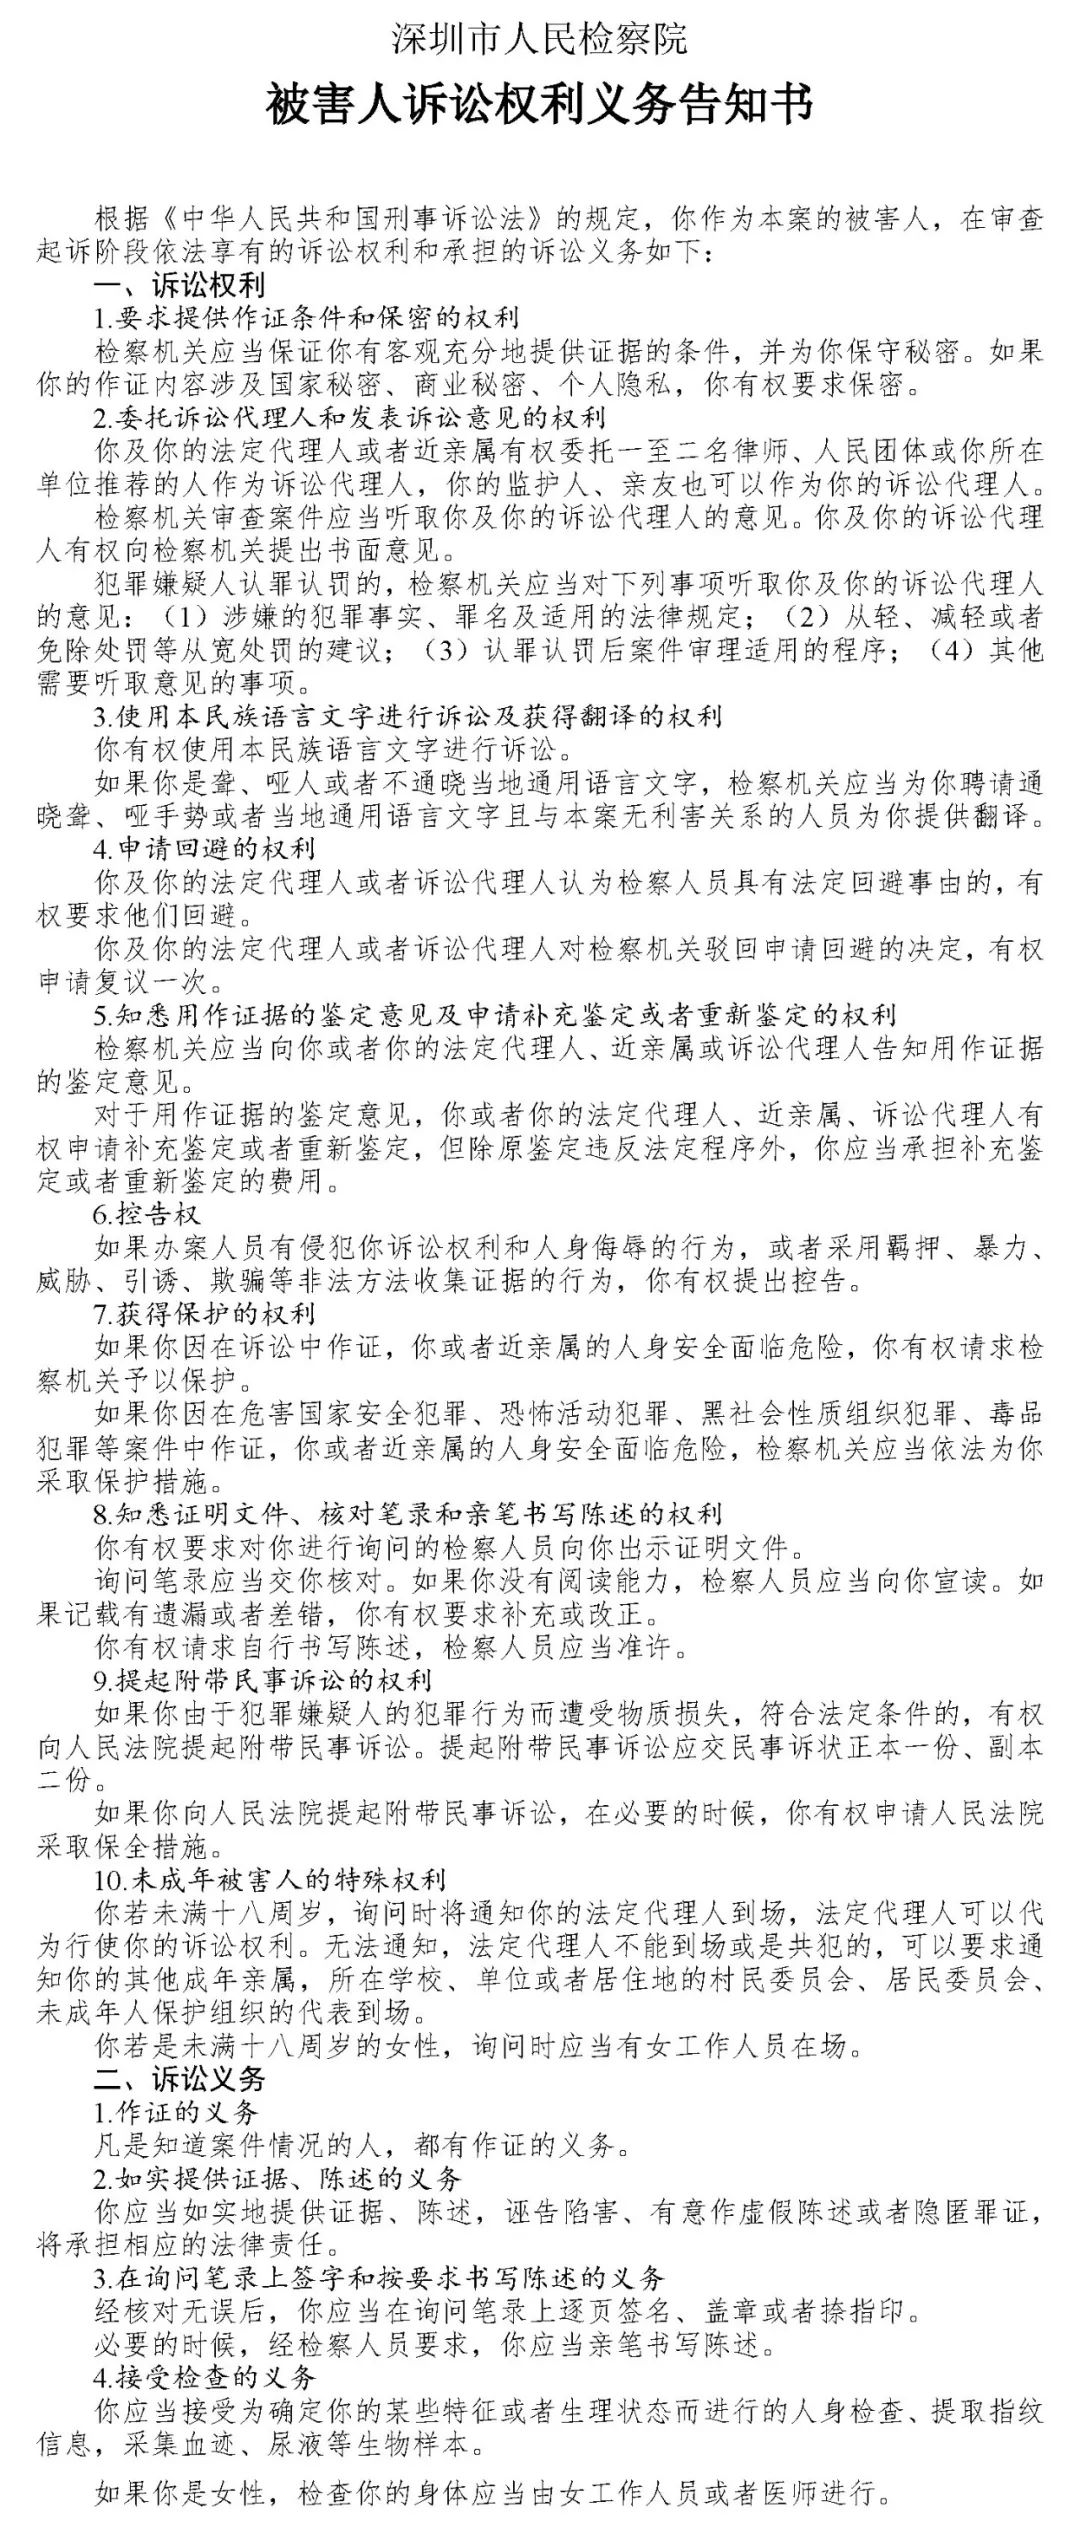 深圳人民检察院起诉红岭创投周世平等十八人 非法集资1395亿